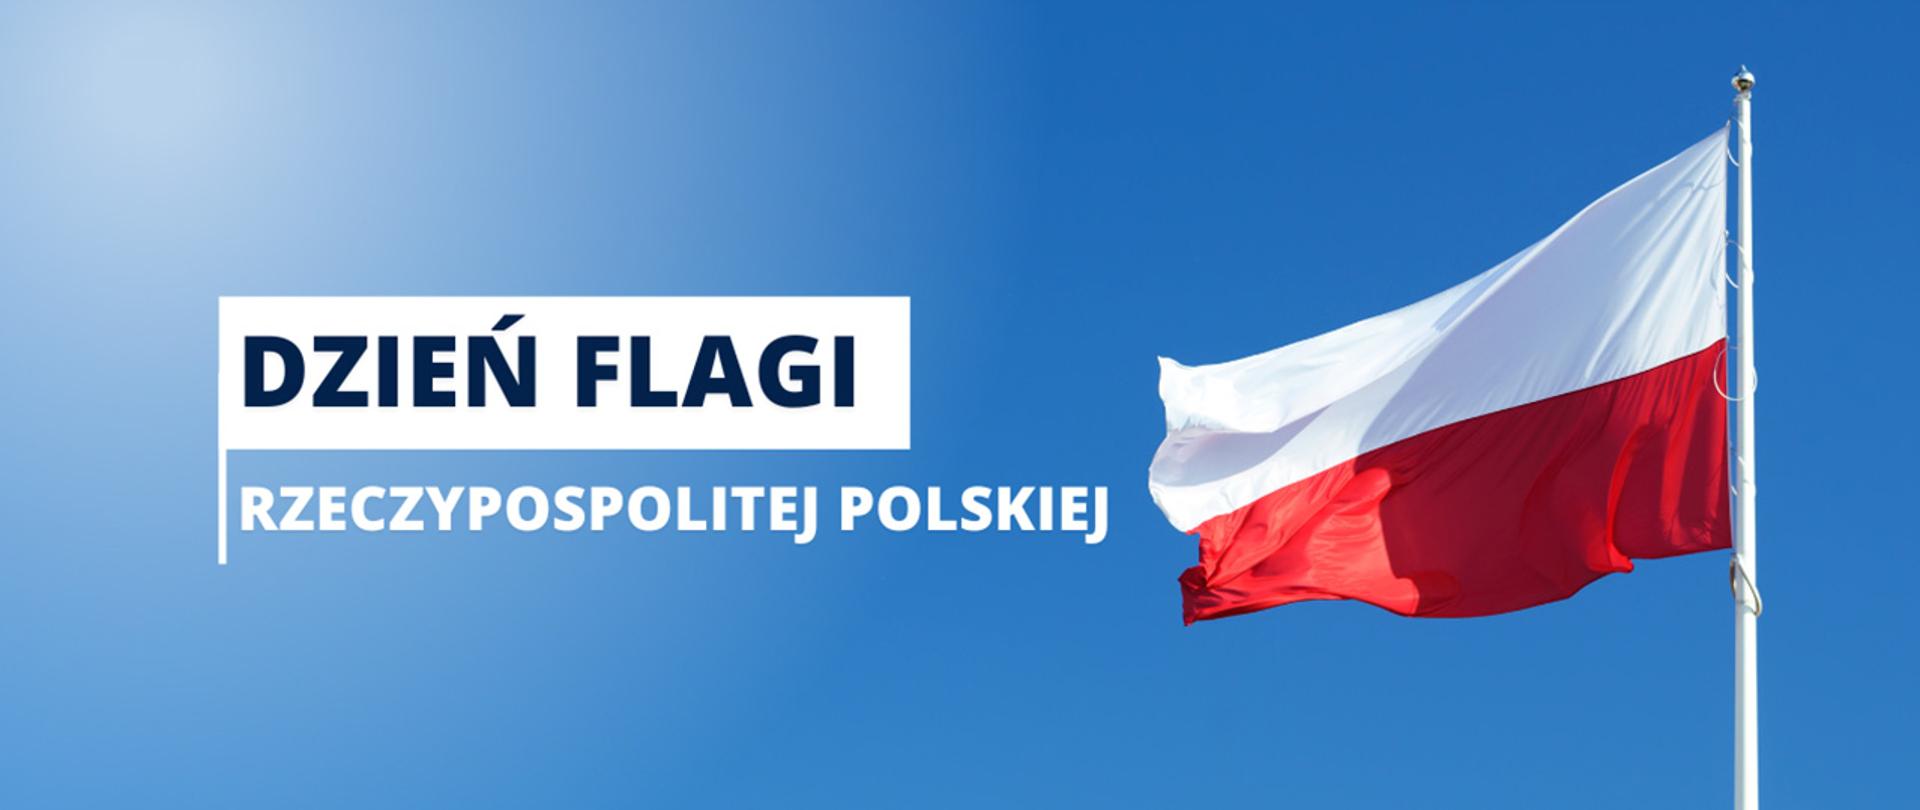 Polska flaga powiewająca na maszcie, obok napis: Dzień Flagi Rzeczypospolitej Polskiej.